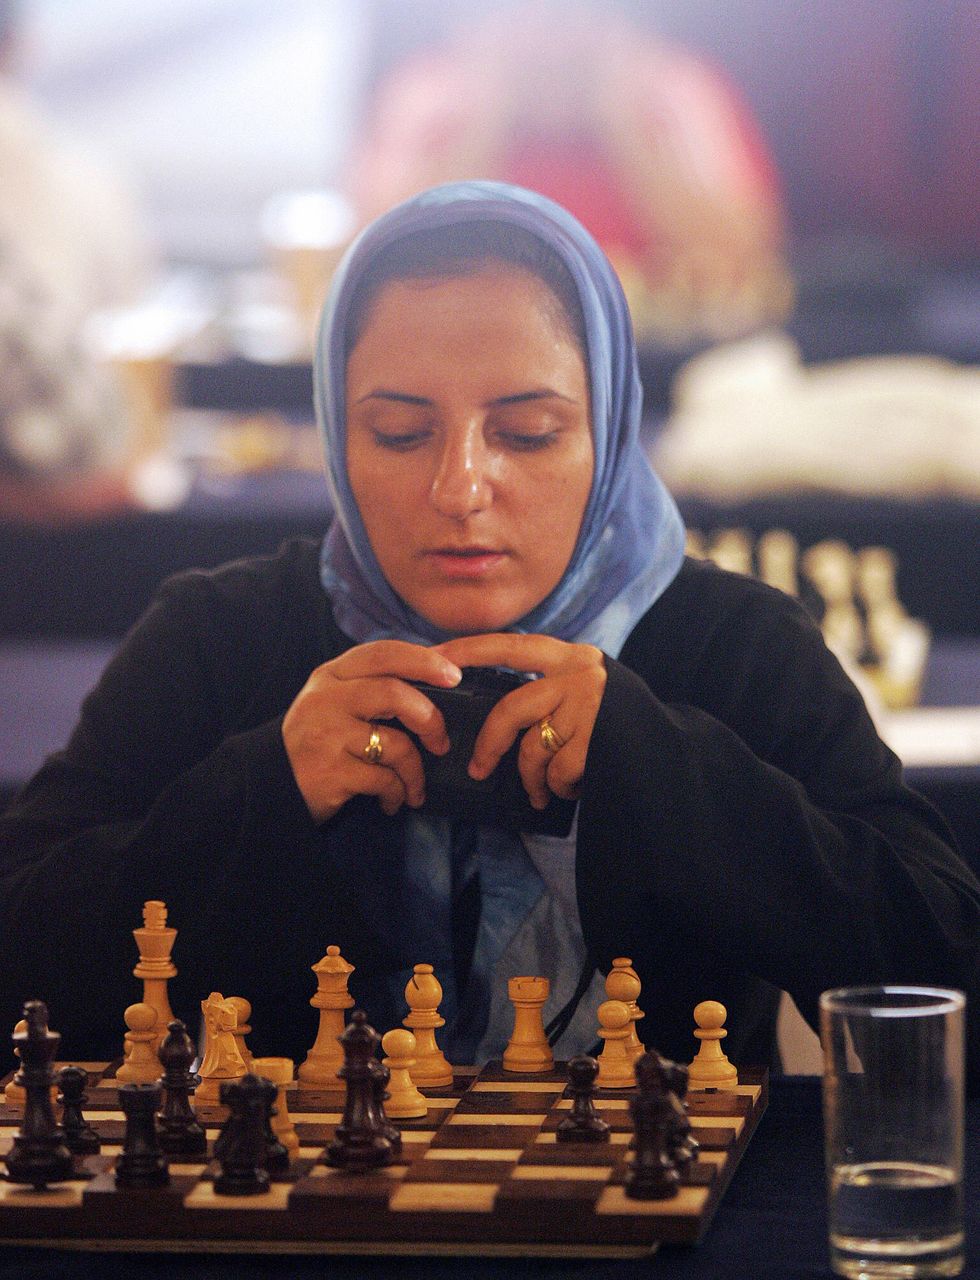 Iranian woman playing chess | ELLE UK